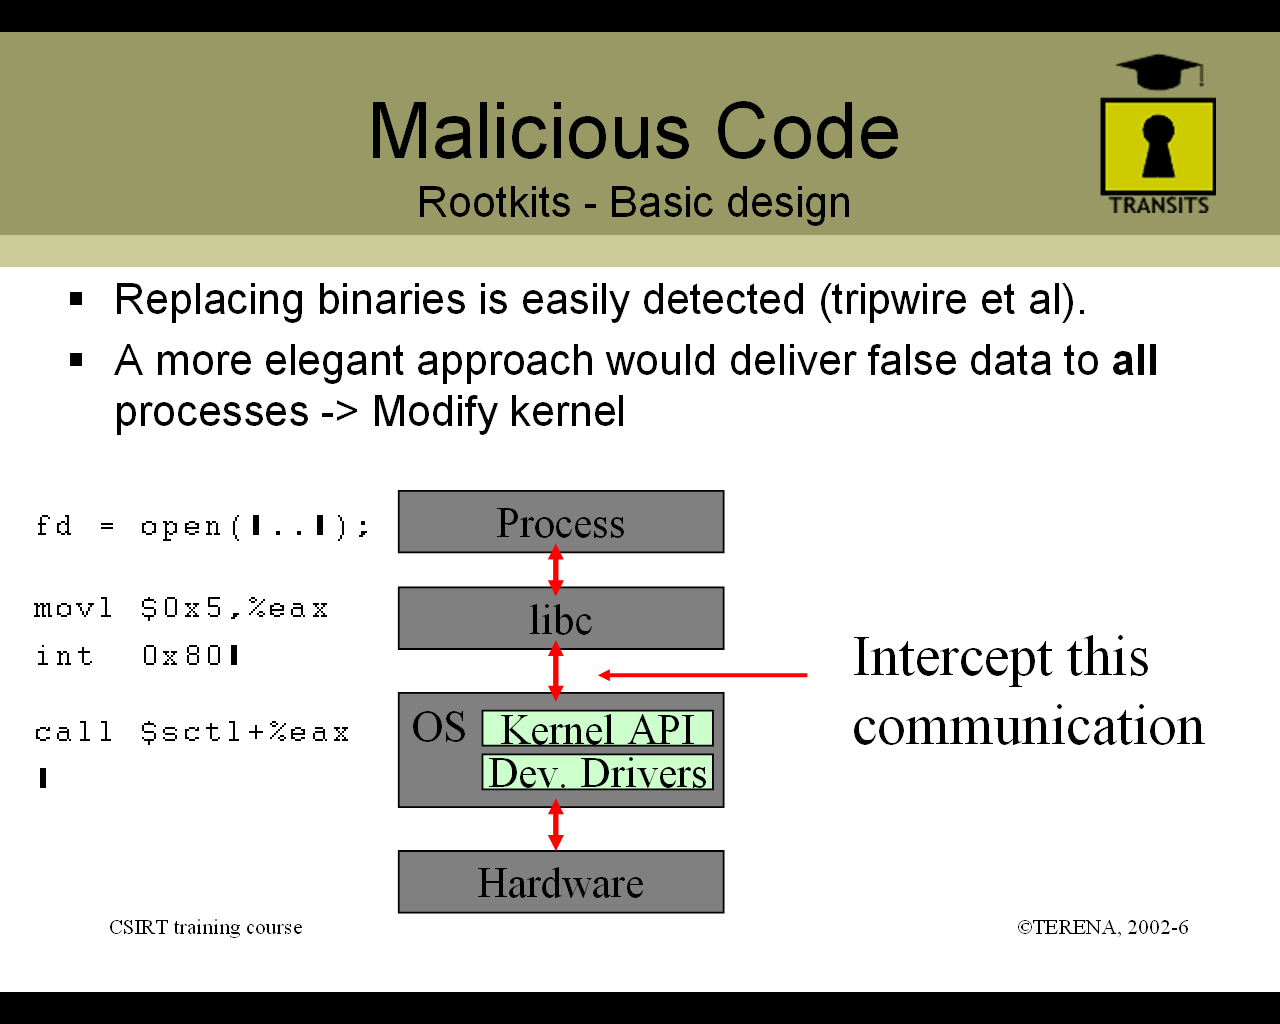 A Műszaki modulból: Egy botnet (robothálózat) leírása A Műszaki modulból: Egy rootkit (számítógépes